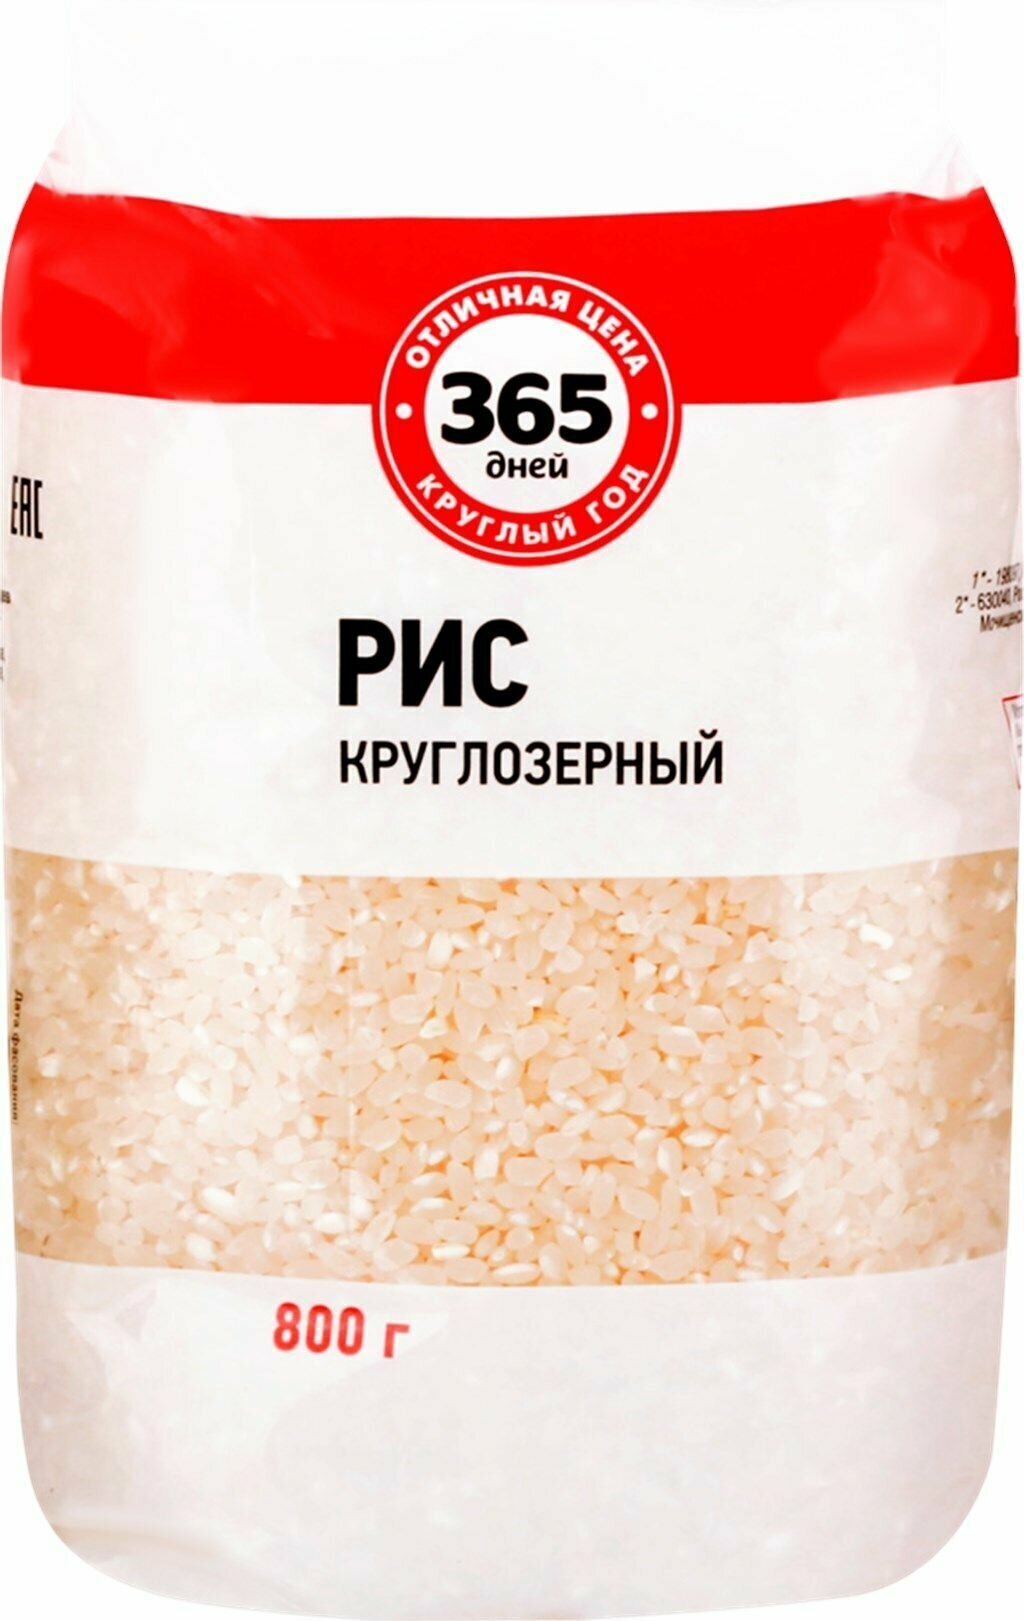 Рис круглозерный 365 дней, 800 г - 10 шт.